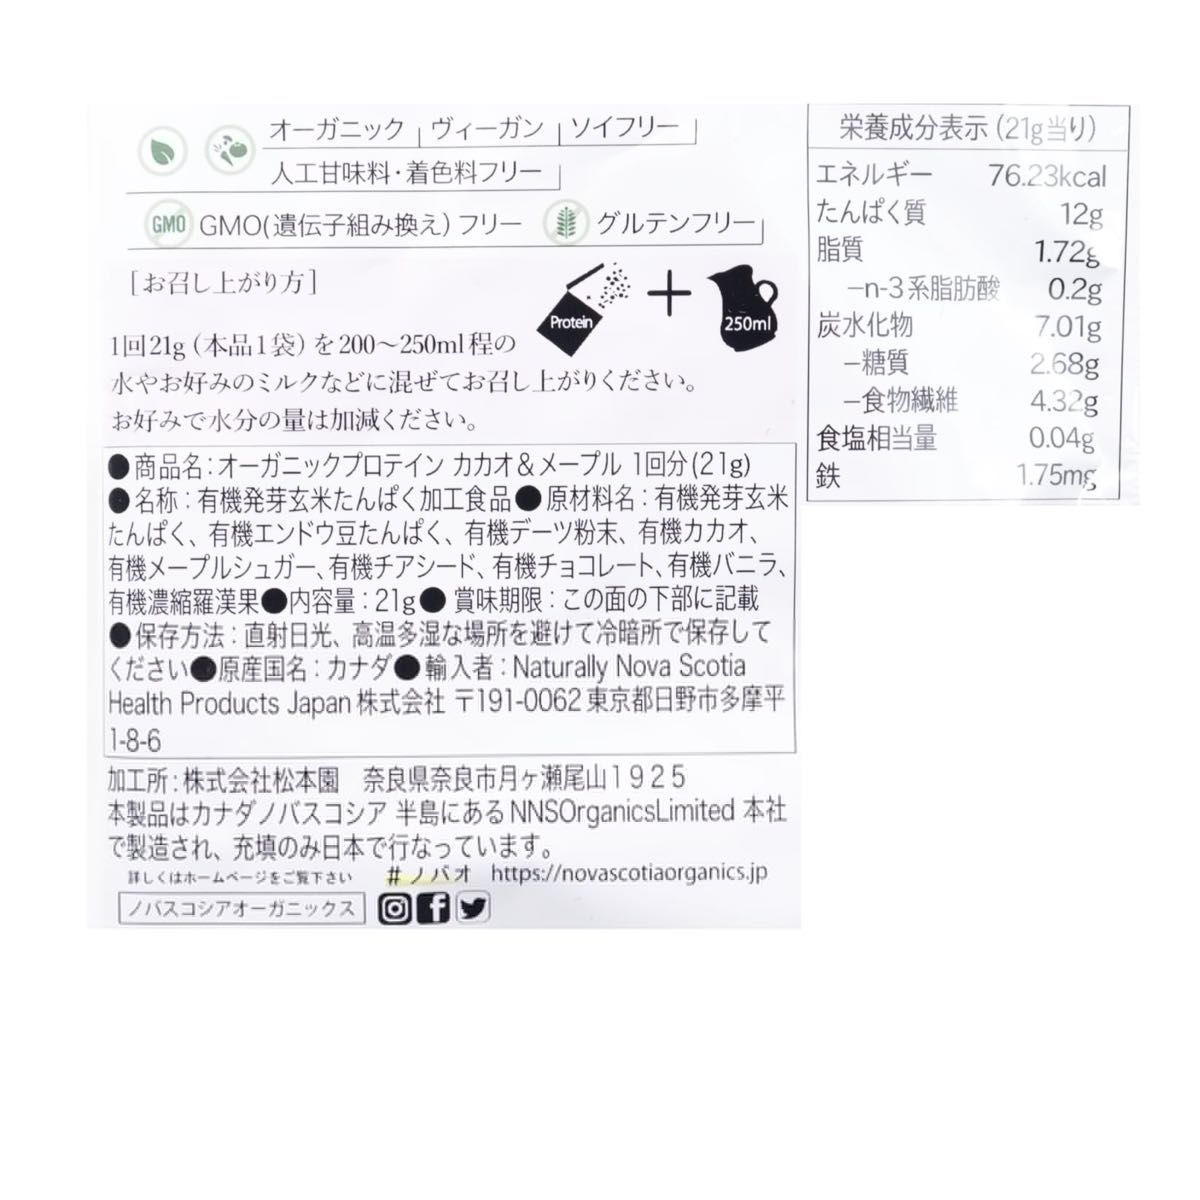 ★ ノバスコシア オーガニックプロテイン カカオ&メープル (21g)×10袋 ★